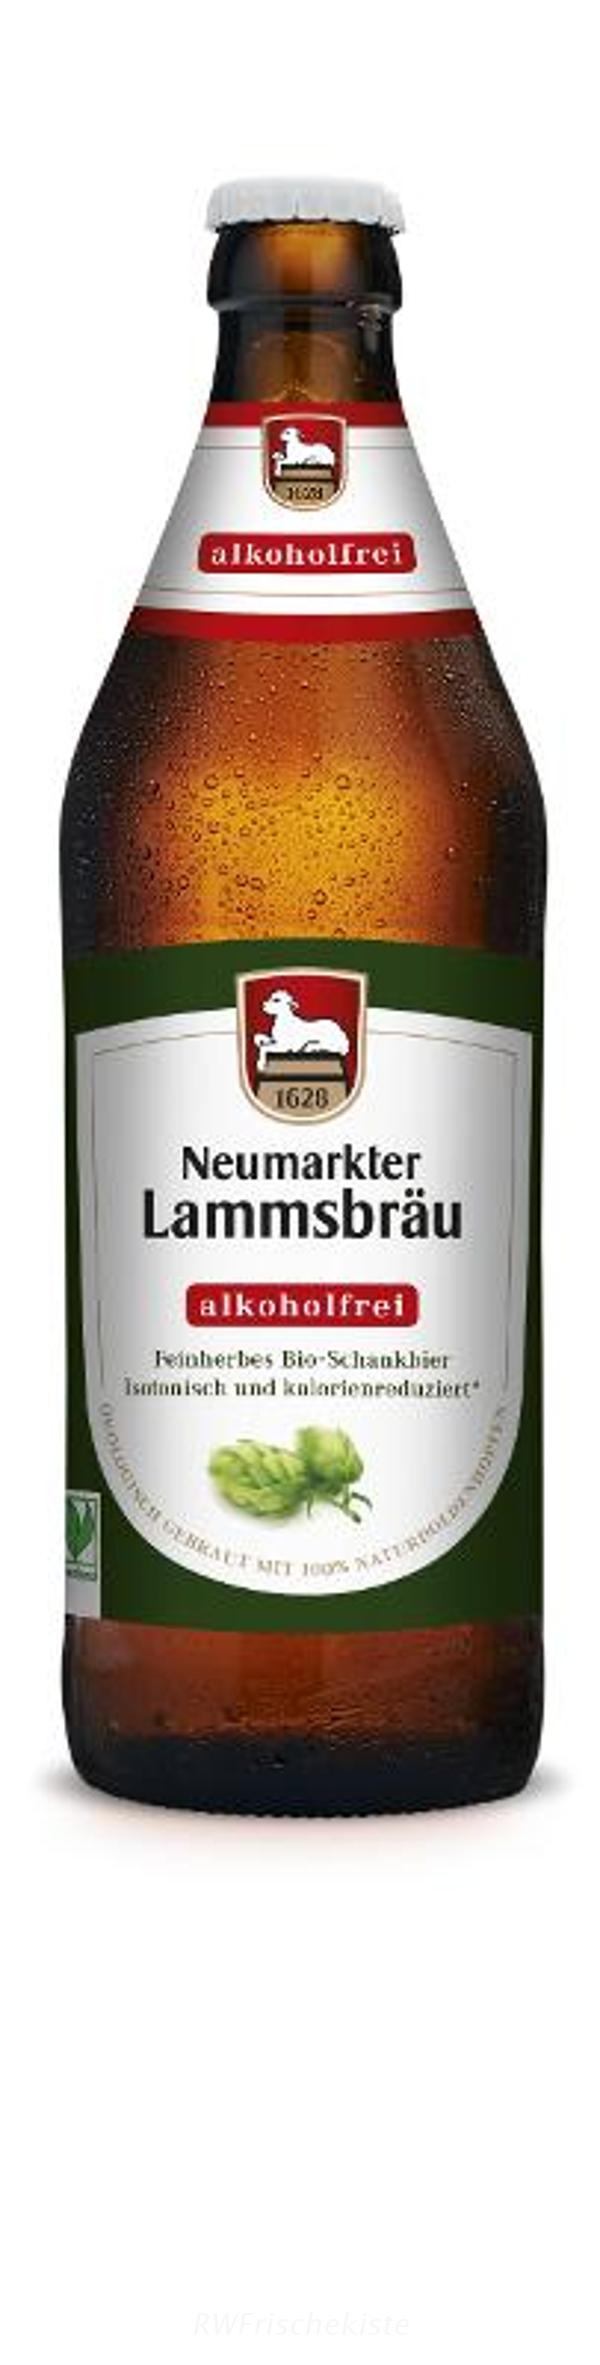 Produktfoto zu Lammsbräu Alk.fr. 0,5l 10er